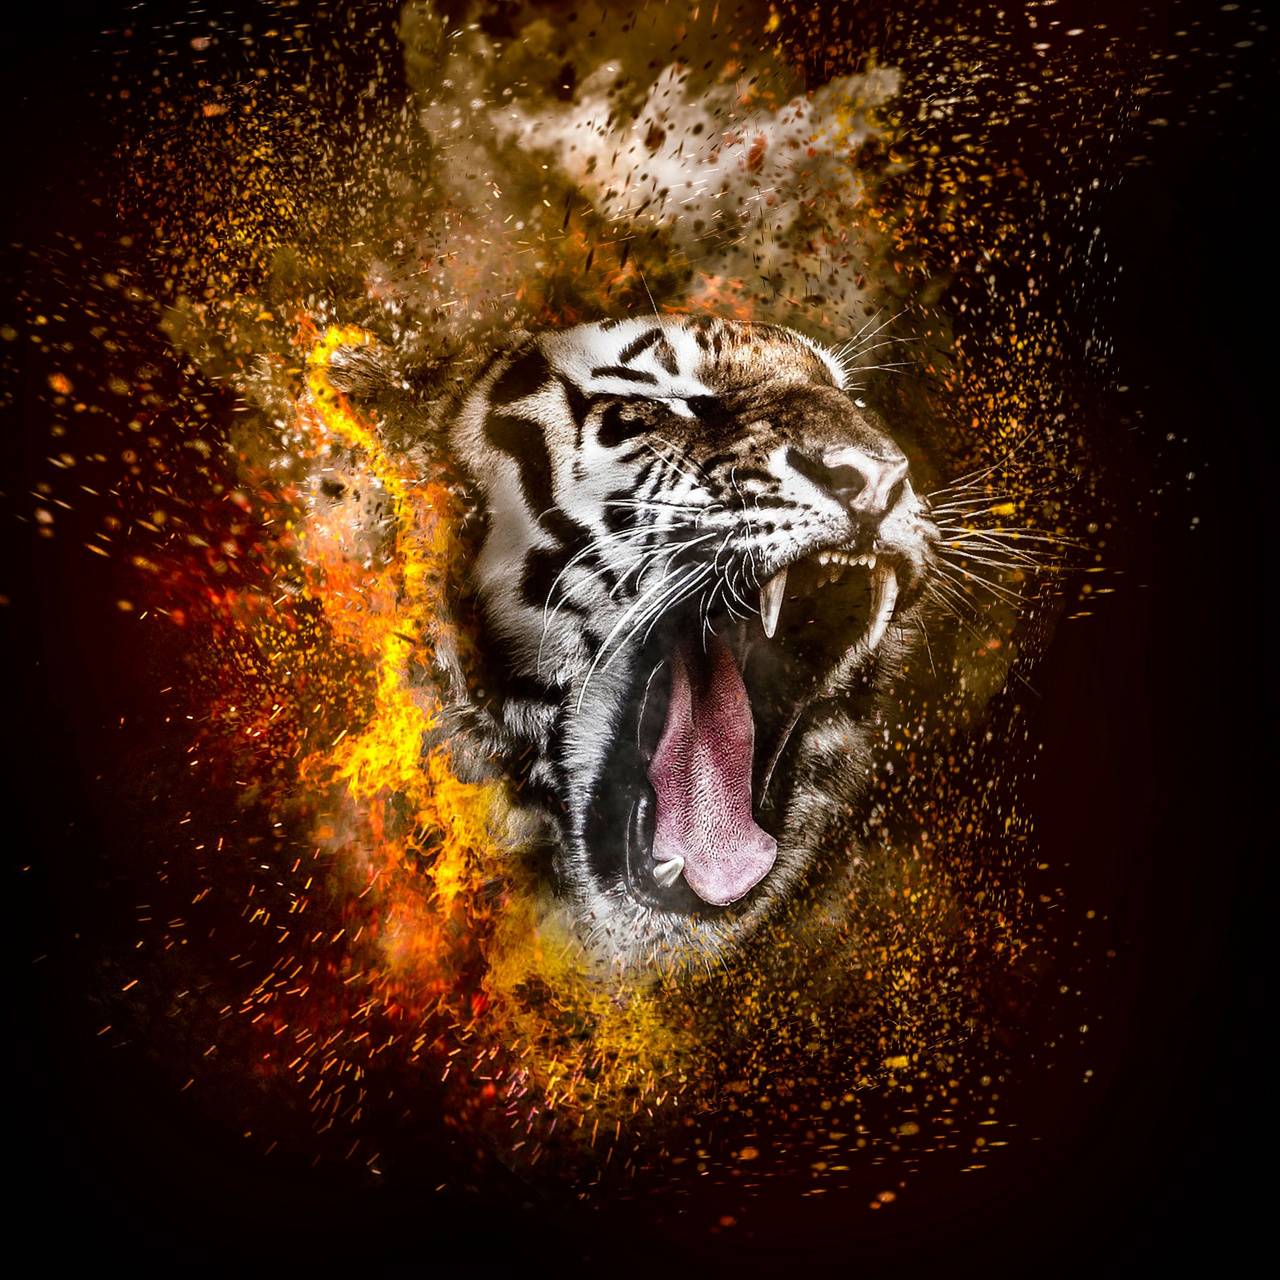 Tiger roar wallpaper by Mr_dare_devil27 .zedge.net